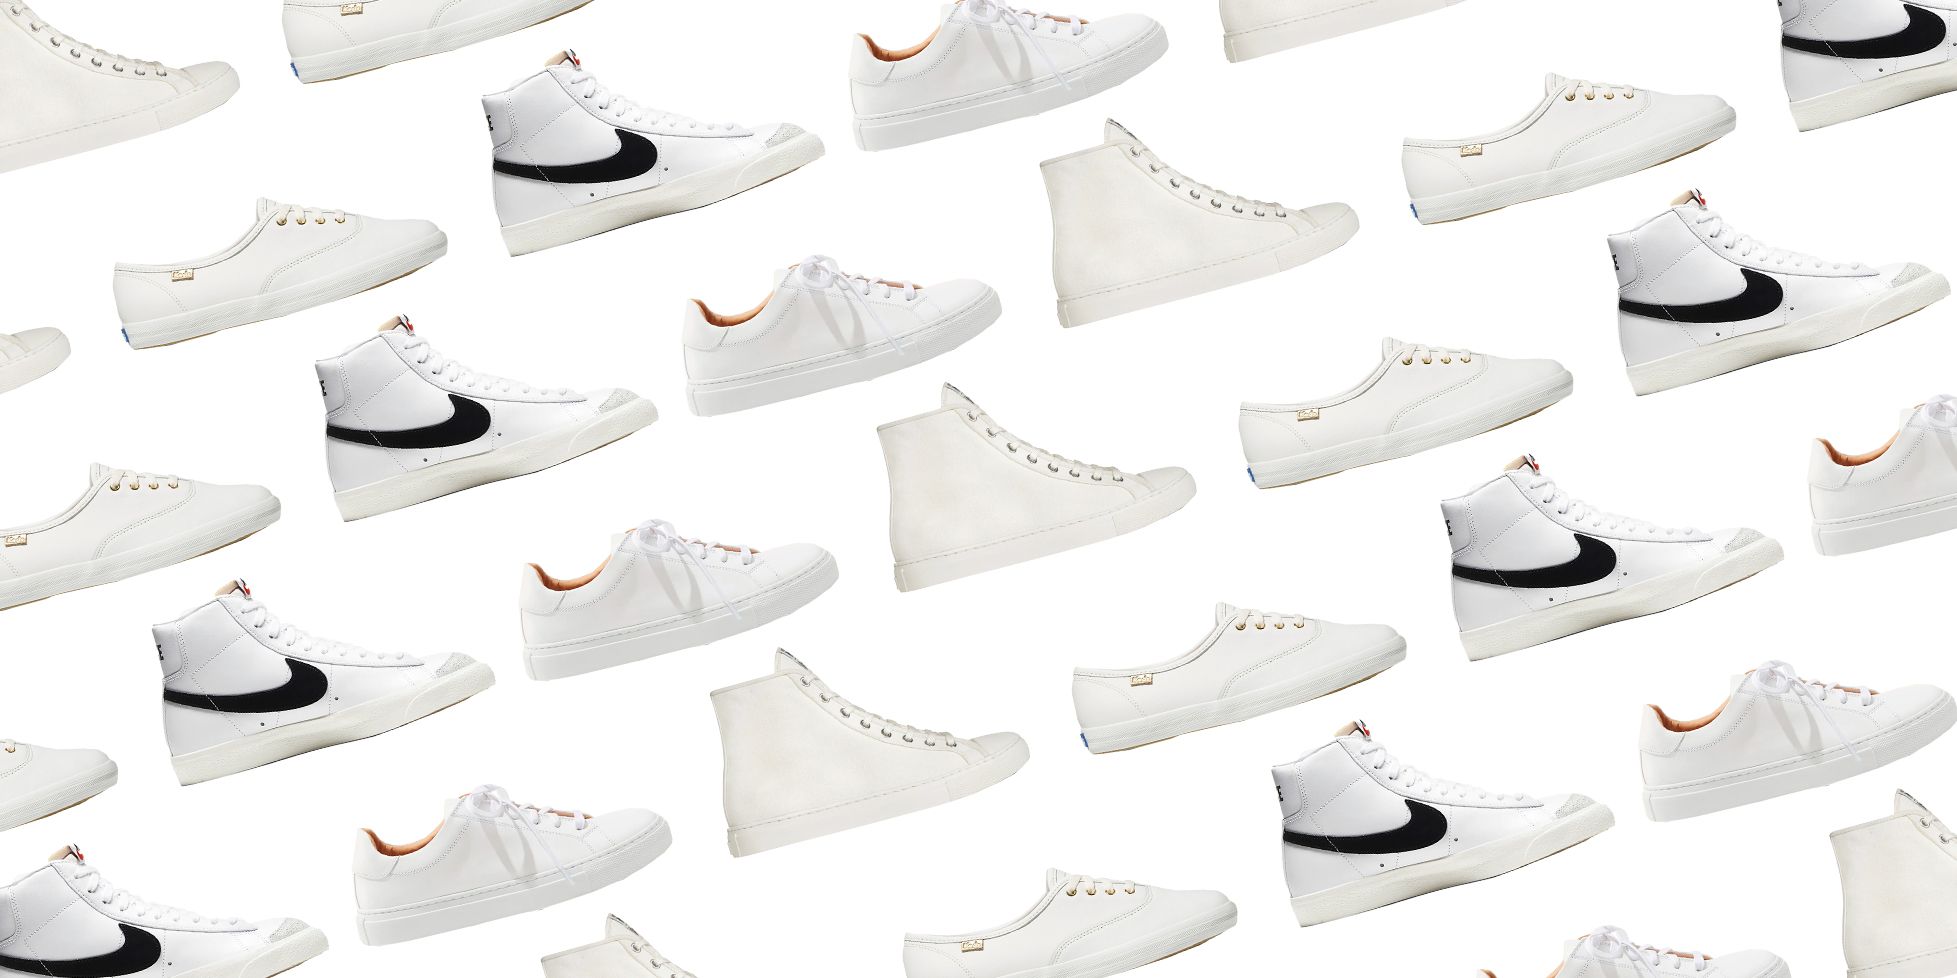 Nike Darwin Men Size 10 Lifestyle Shoes 819803-111 White Sneakers | eBay